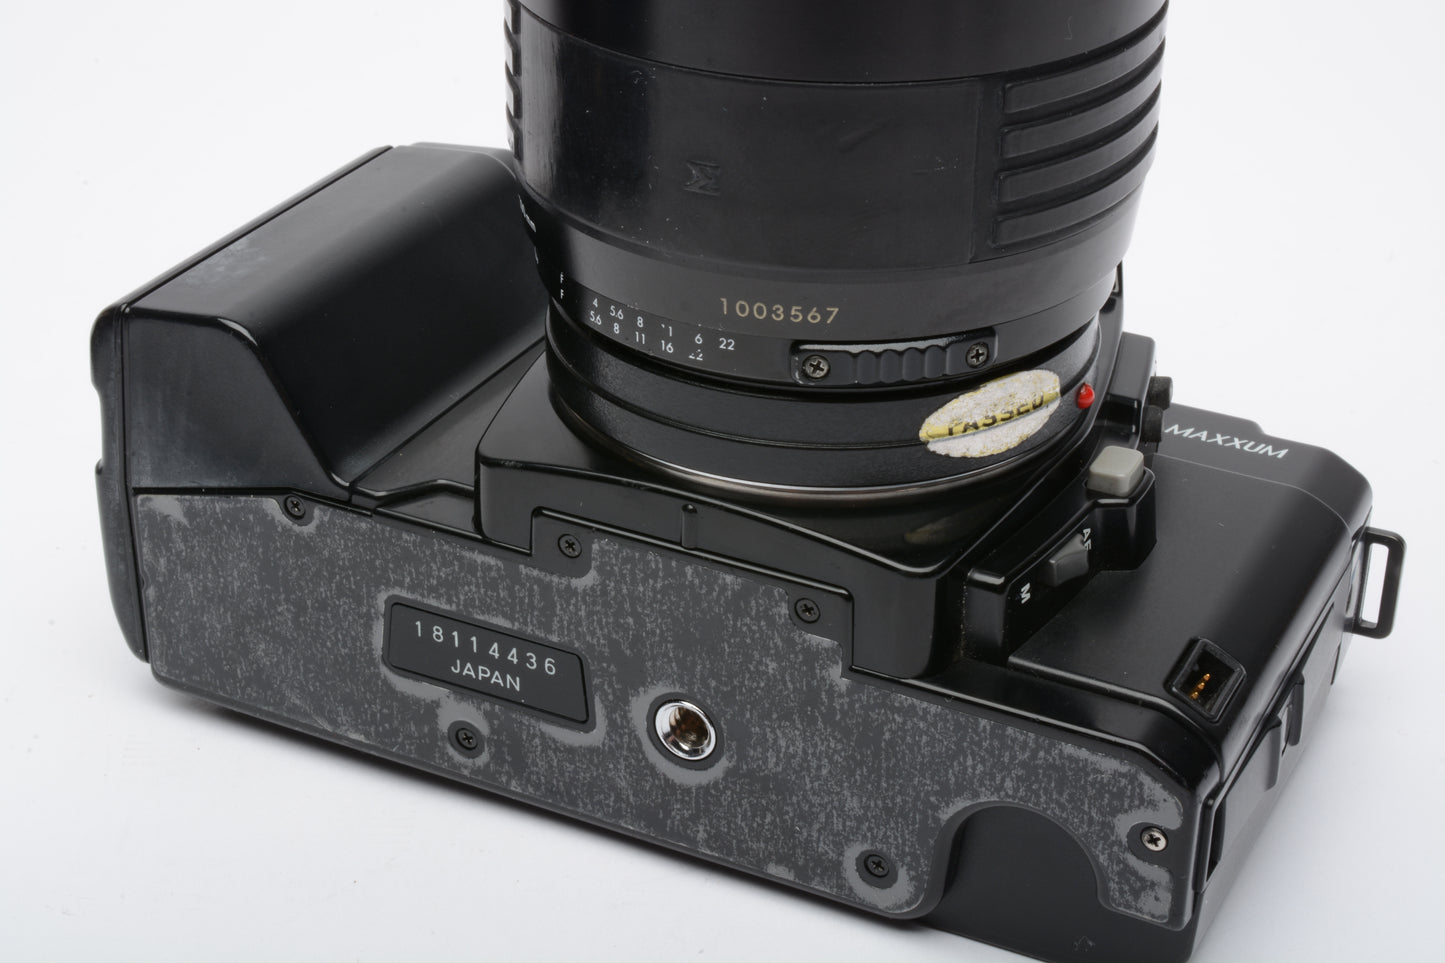 Minolta Maxxum 5000 35mm SLR w/Sigma 60-200mm zoom, tested